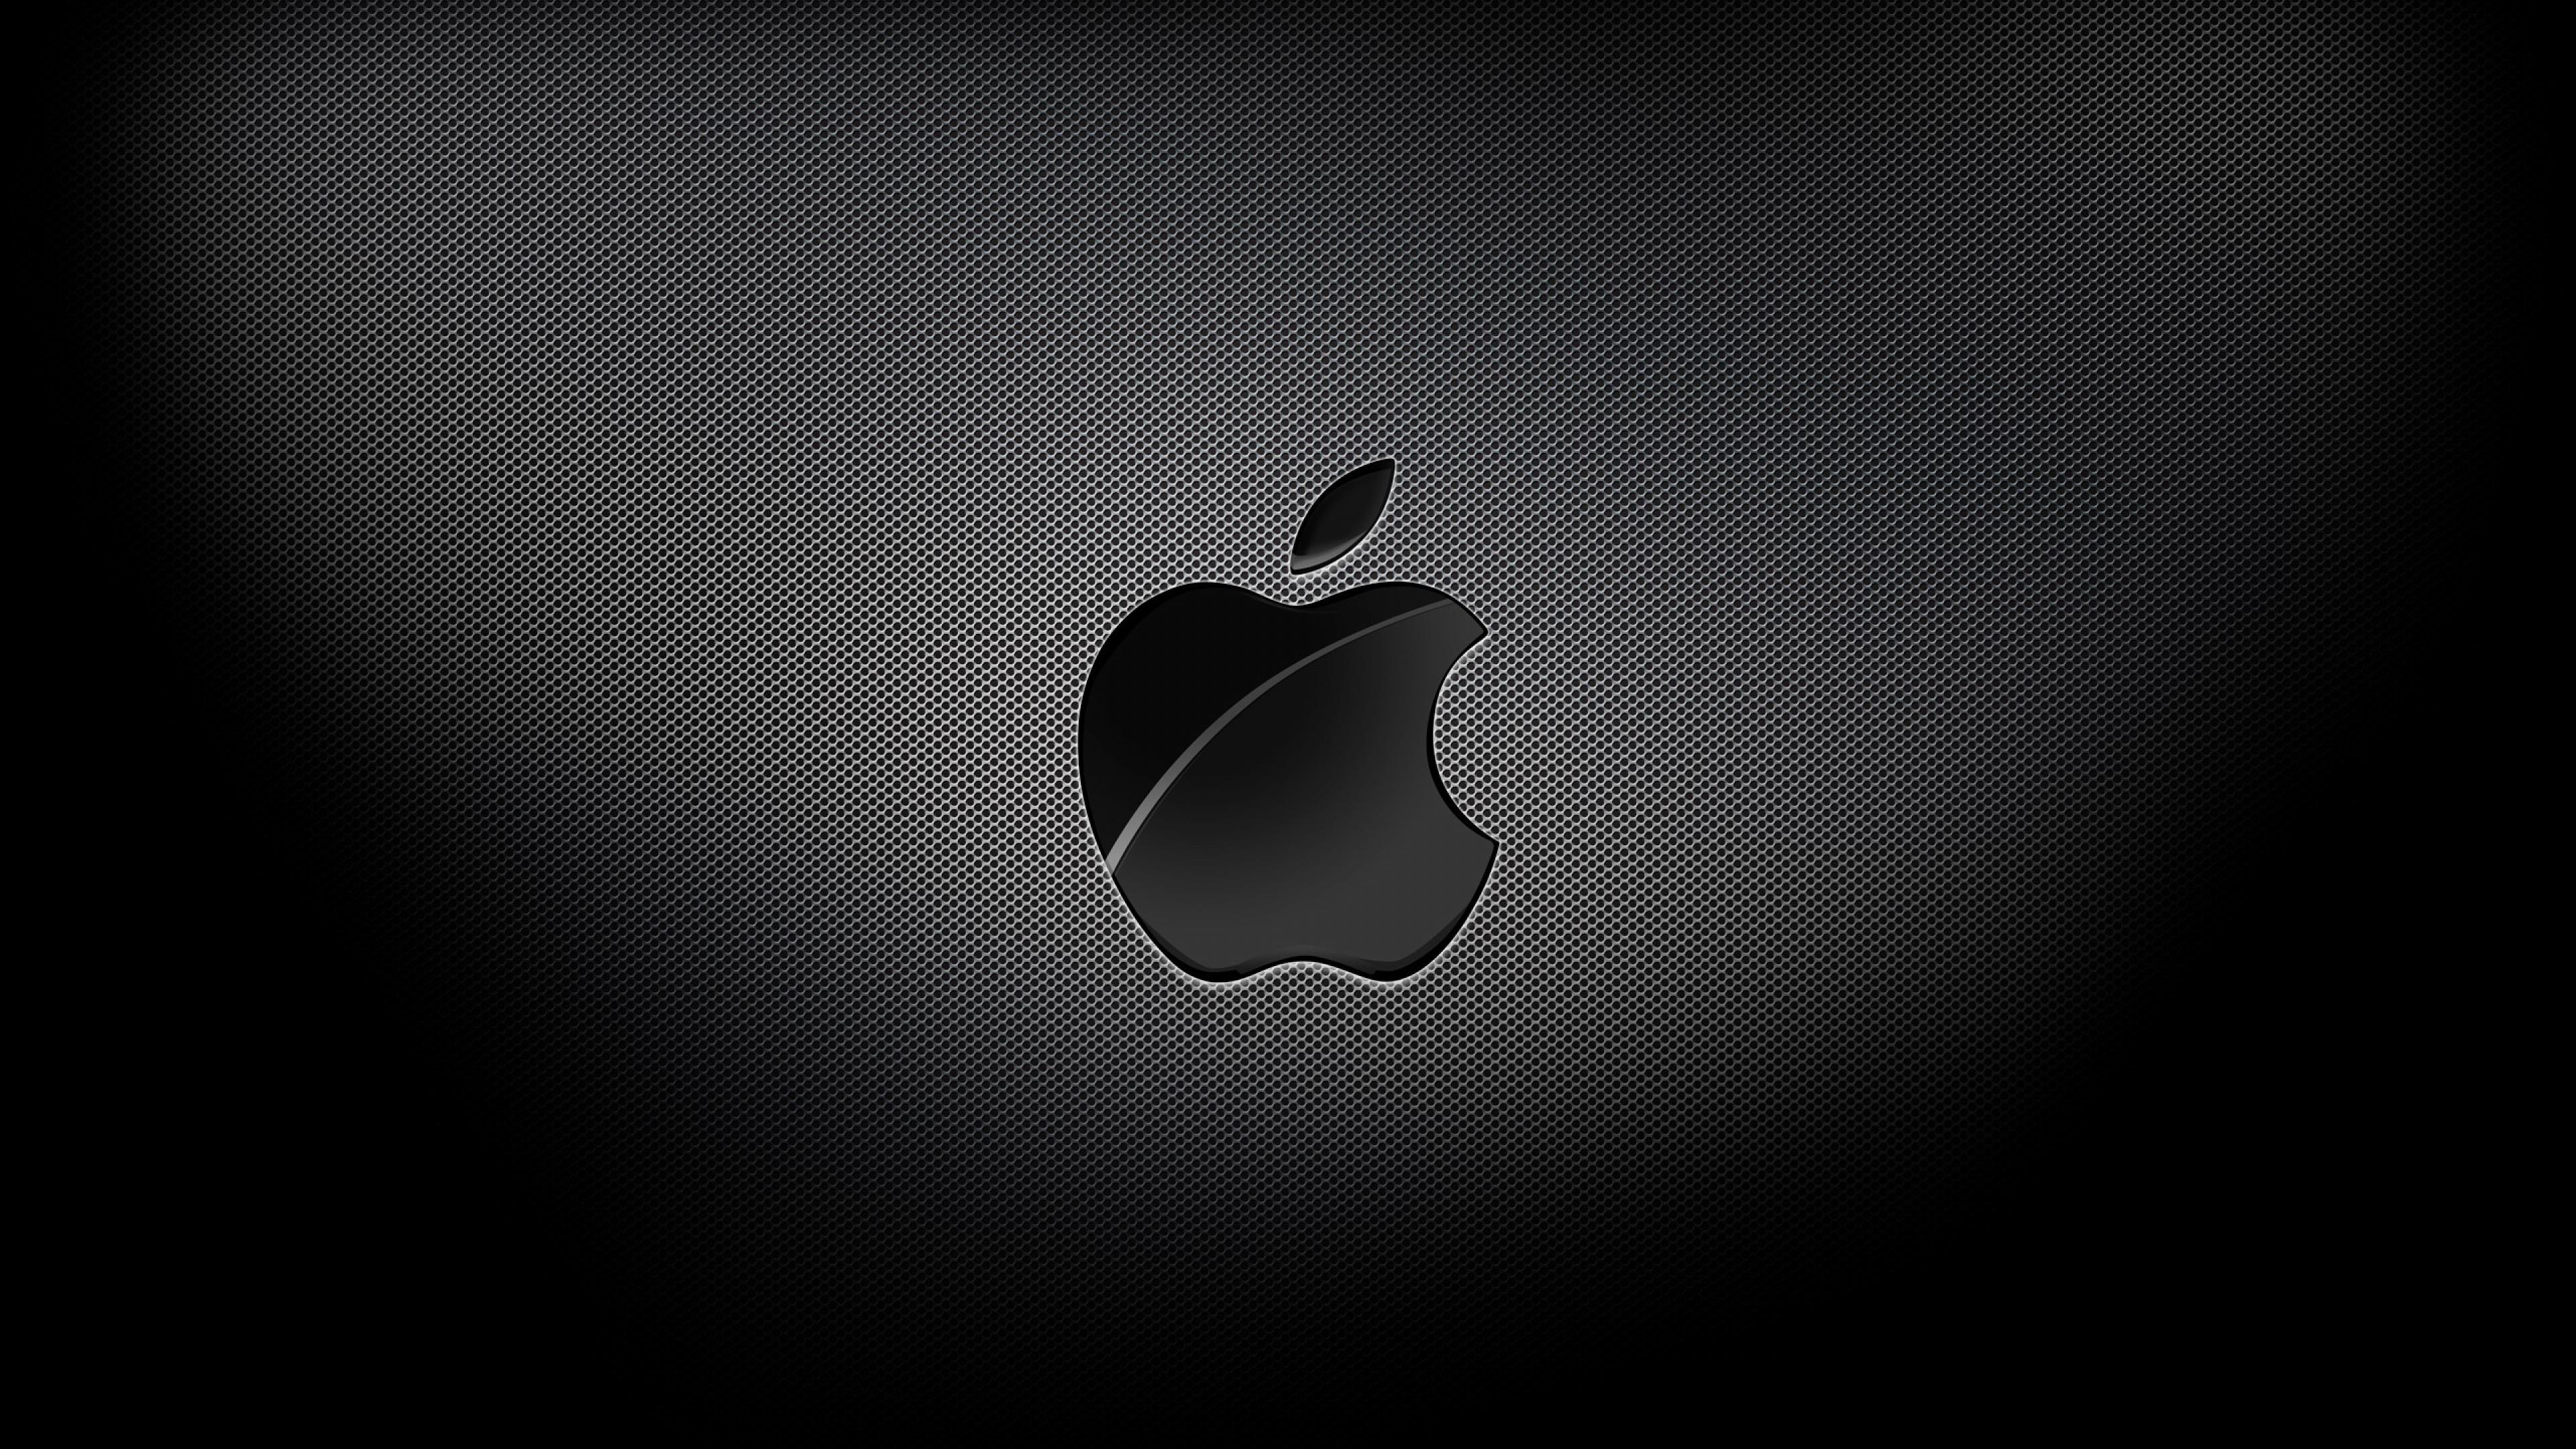 instal the new version for apple 4K Downloader 5.8.5